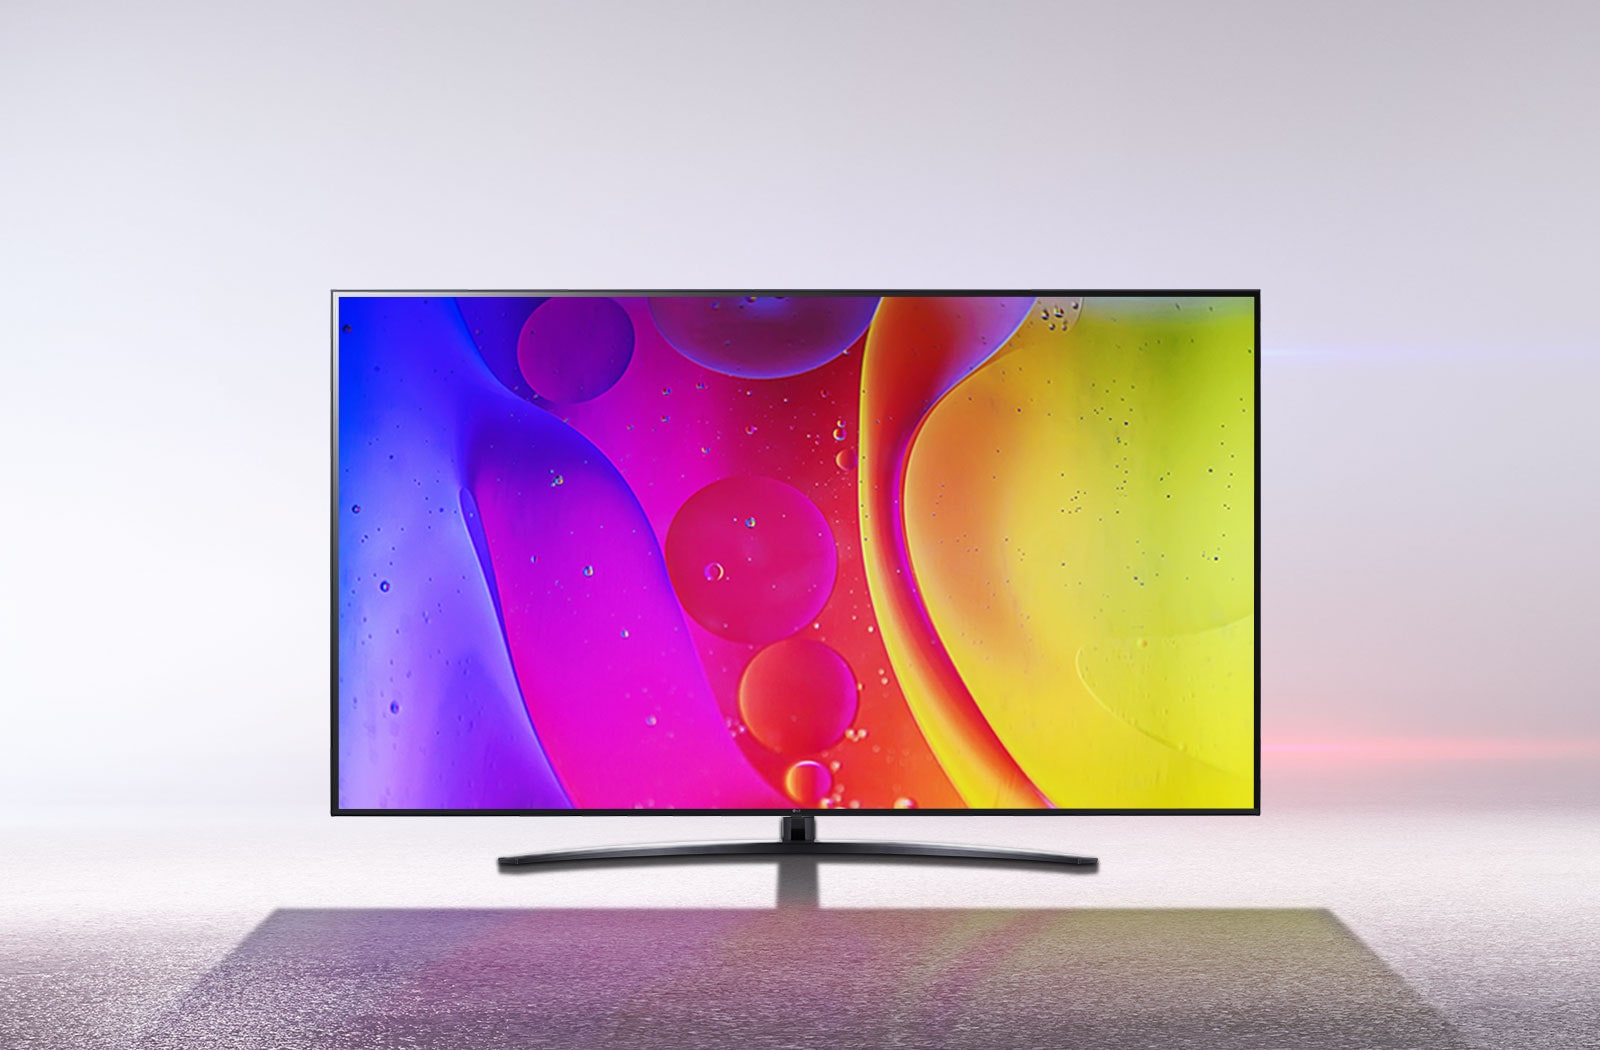 Kar beyazı bir odadaki bir TV ekranı, parlak, hipnotize edici şekilde hareket eden renkleri gösteriyor.